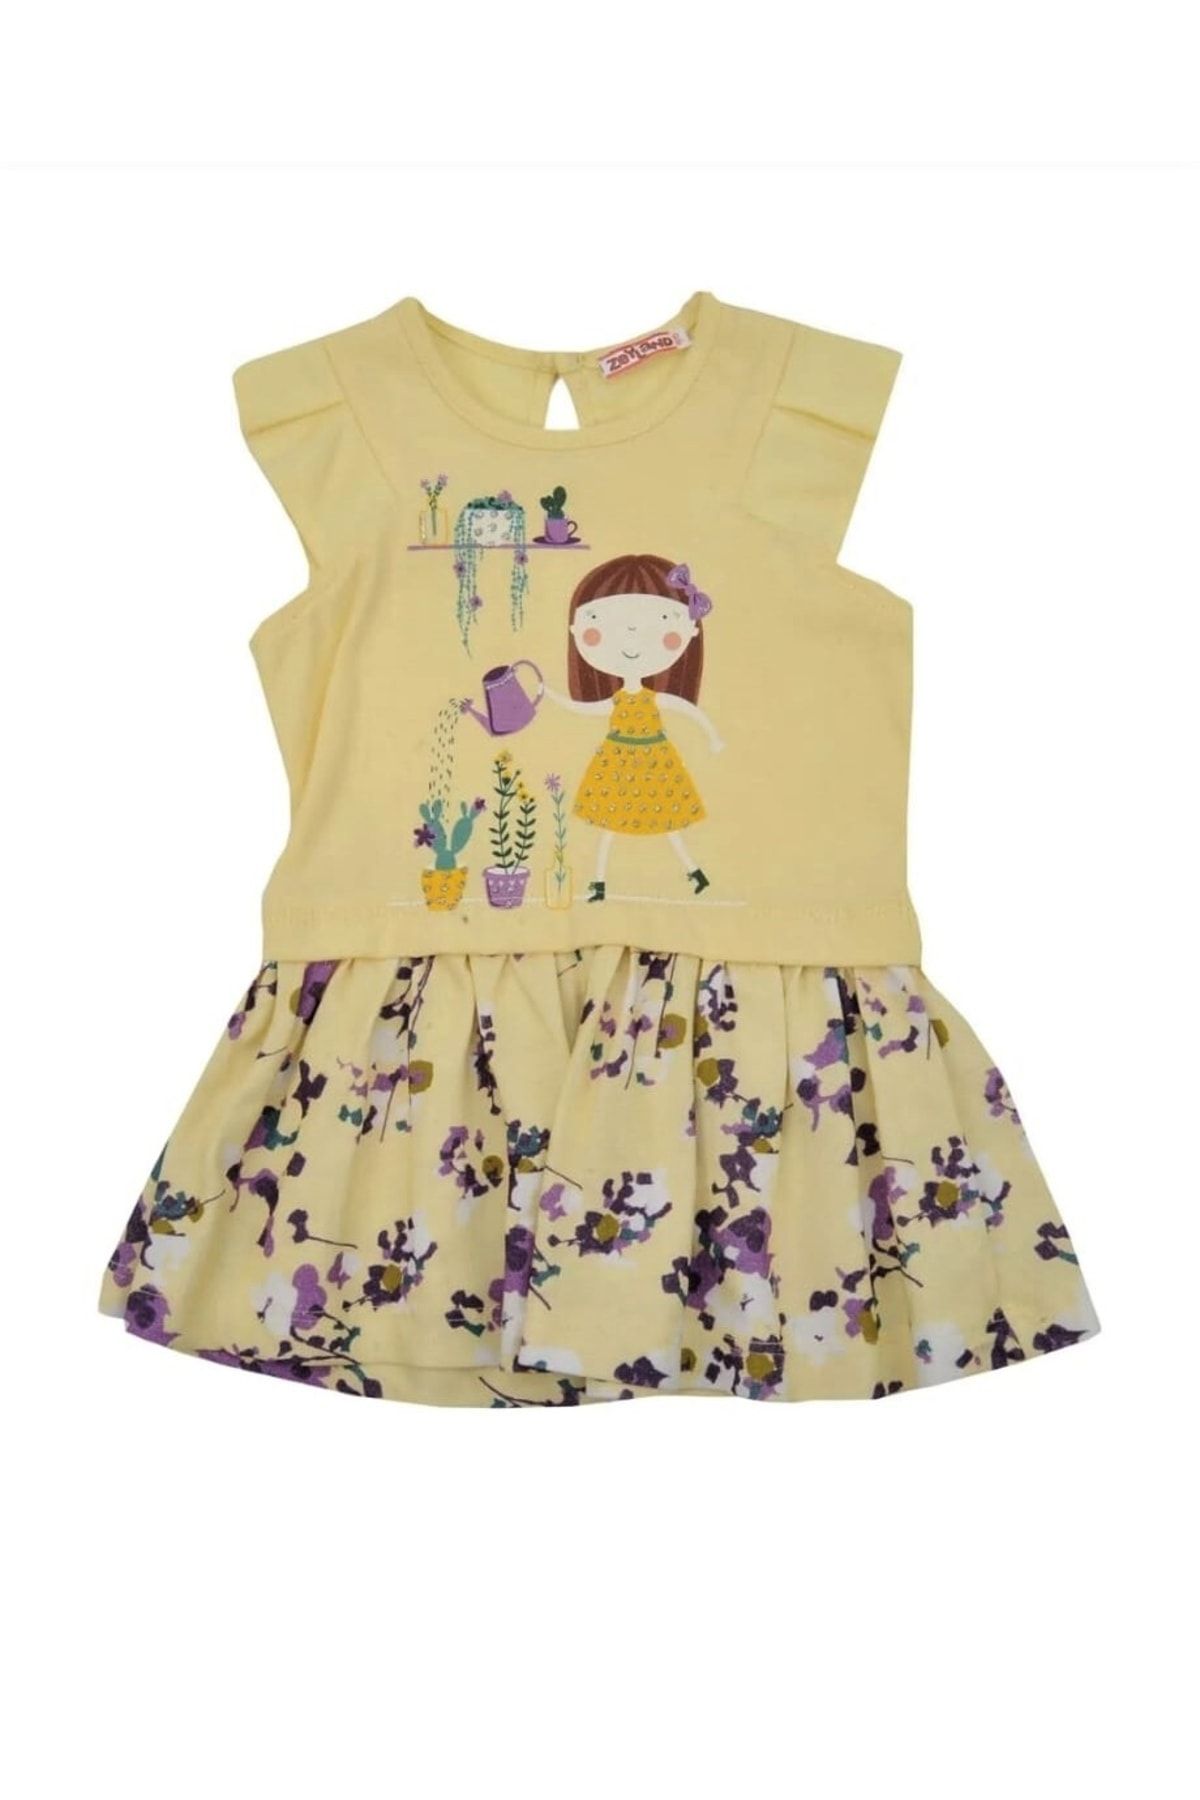 Zeyland Kız Bebek Çocuk %100 Pamuk Cotton Sarı Renk Çicekli Elbise